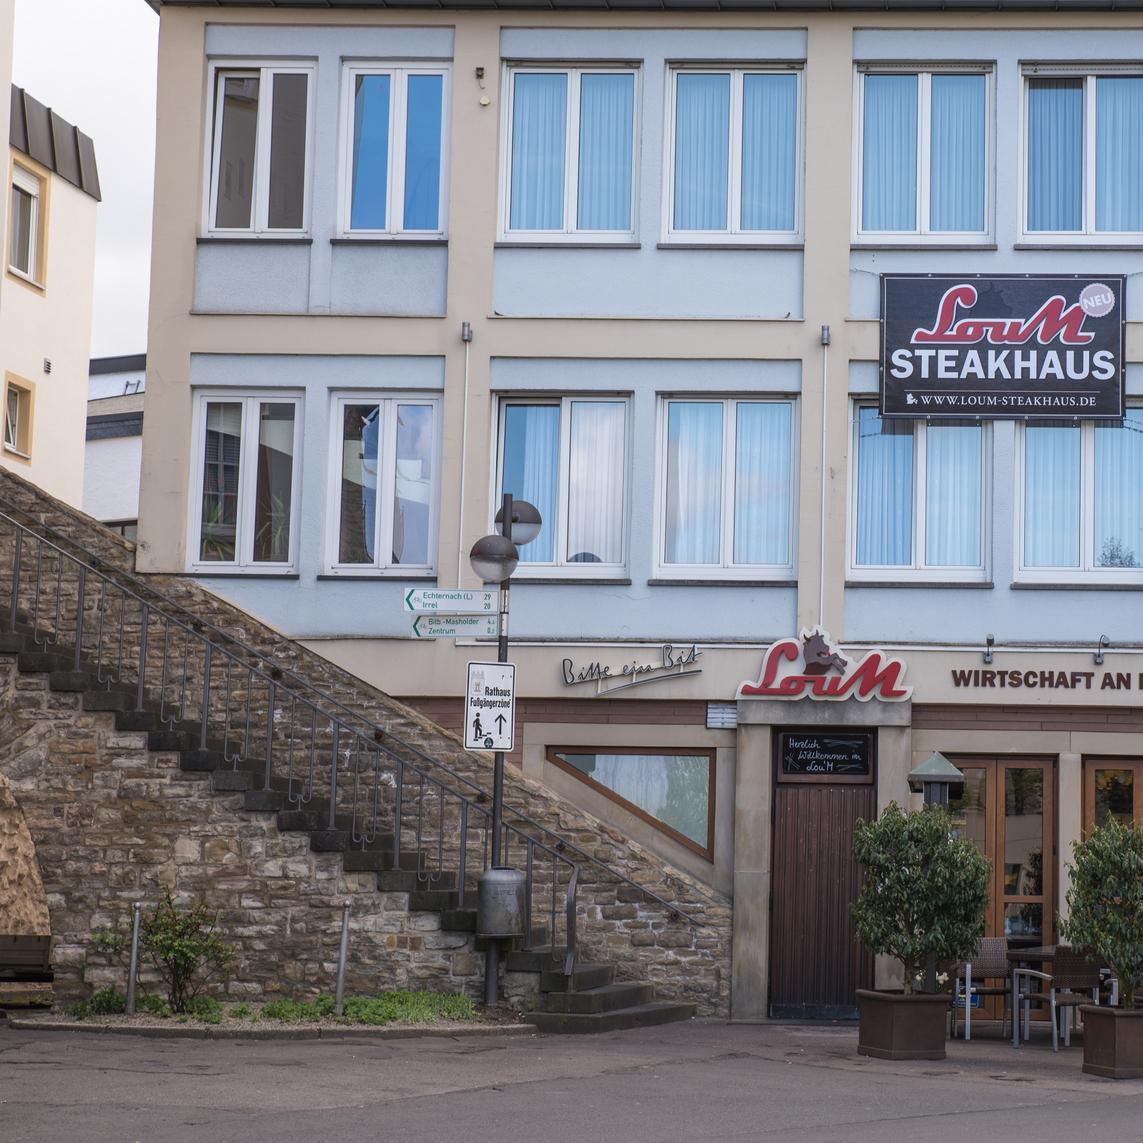 Restaurant "LouM Steakhaus" in Bitburg